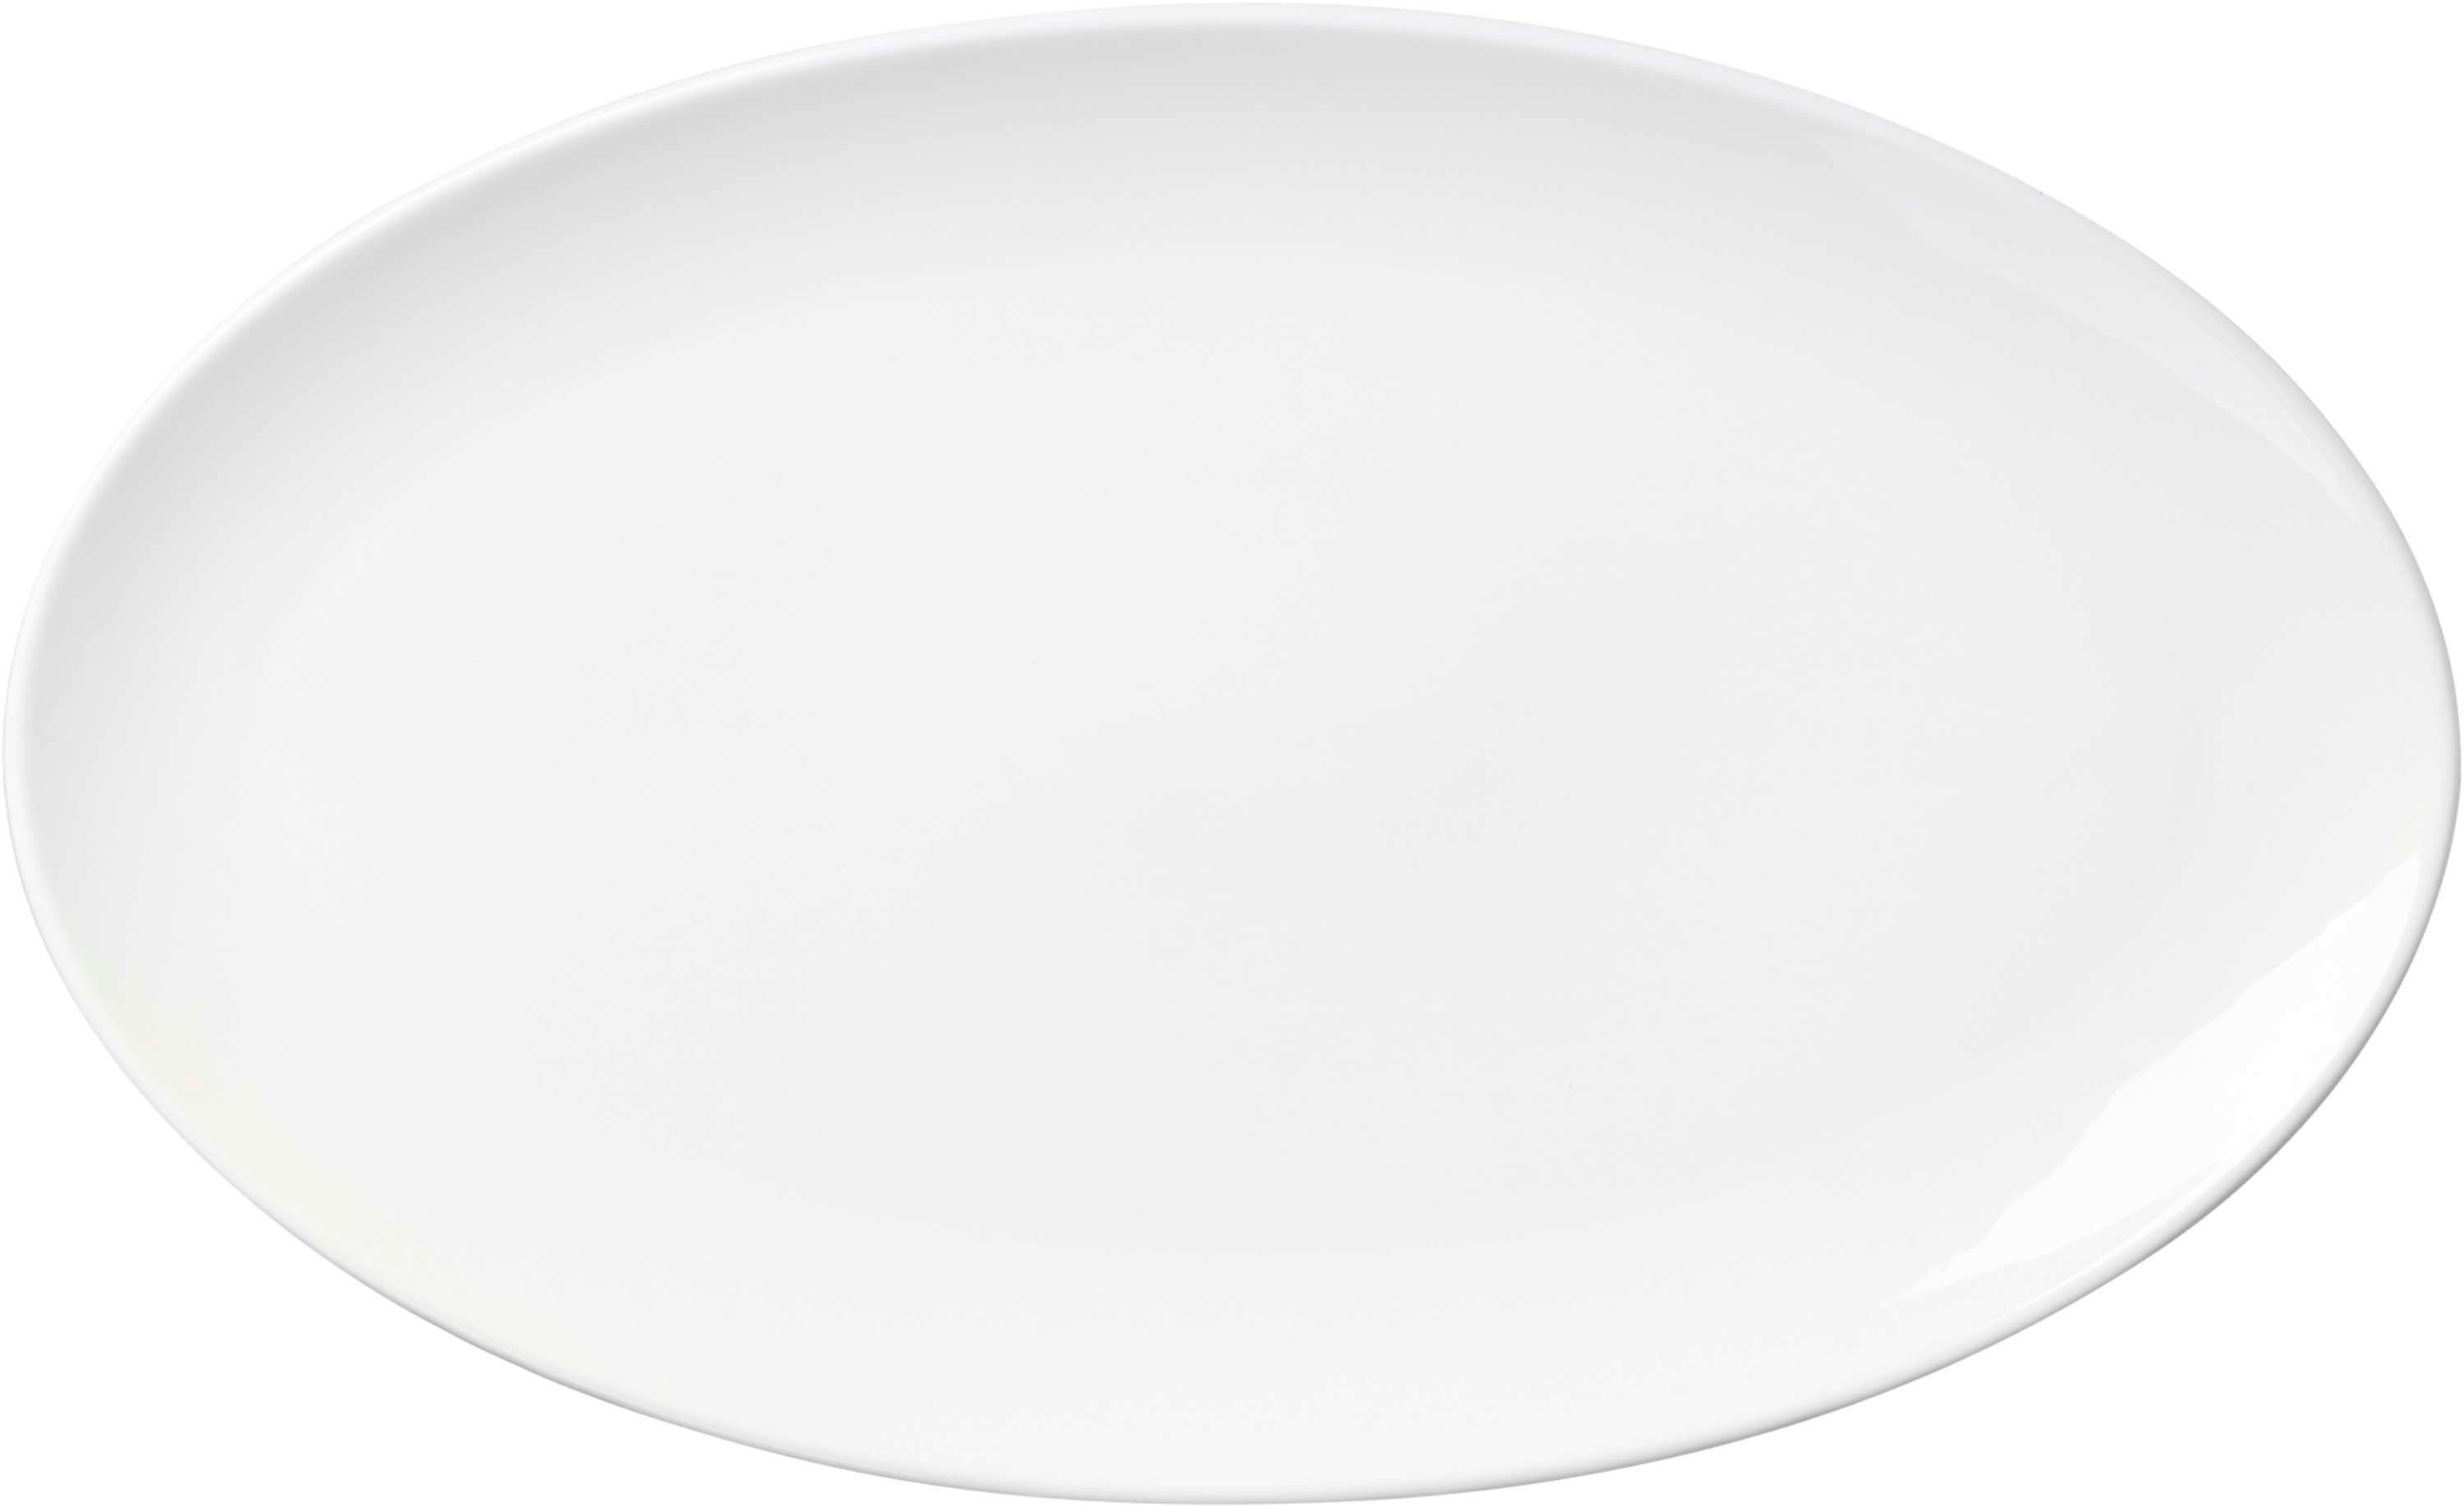 Dies ist eine Liste von Ritzenhoff & Breker Servierplatte Skagen oval 35x21,5cm Platte